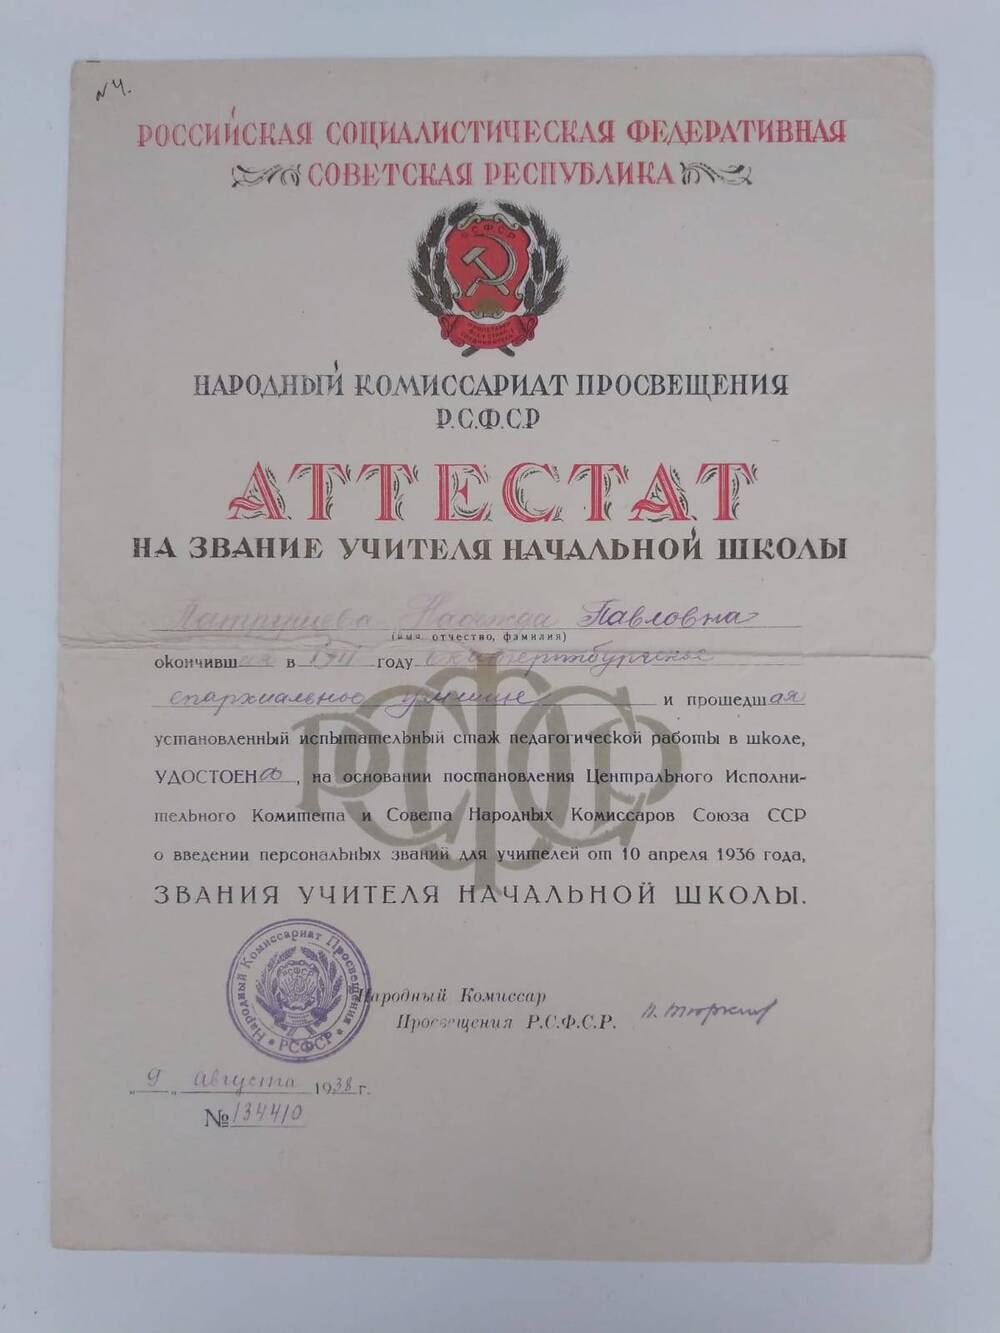 Документ. Аттестат на звание учителя начальной школы от 9 августа 1938г. №134410.